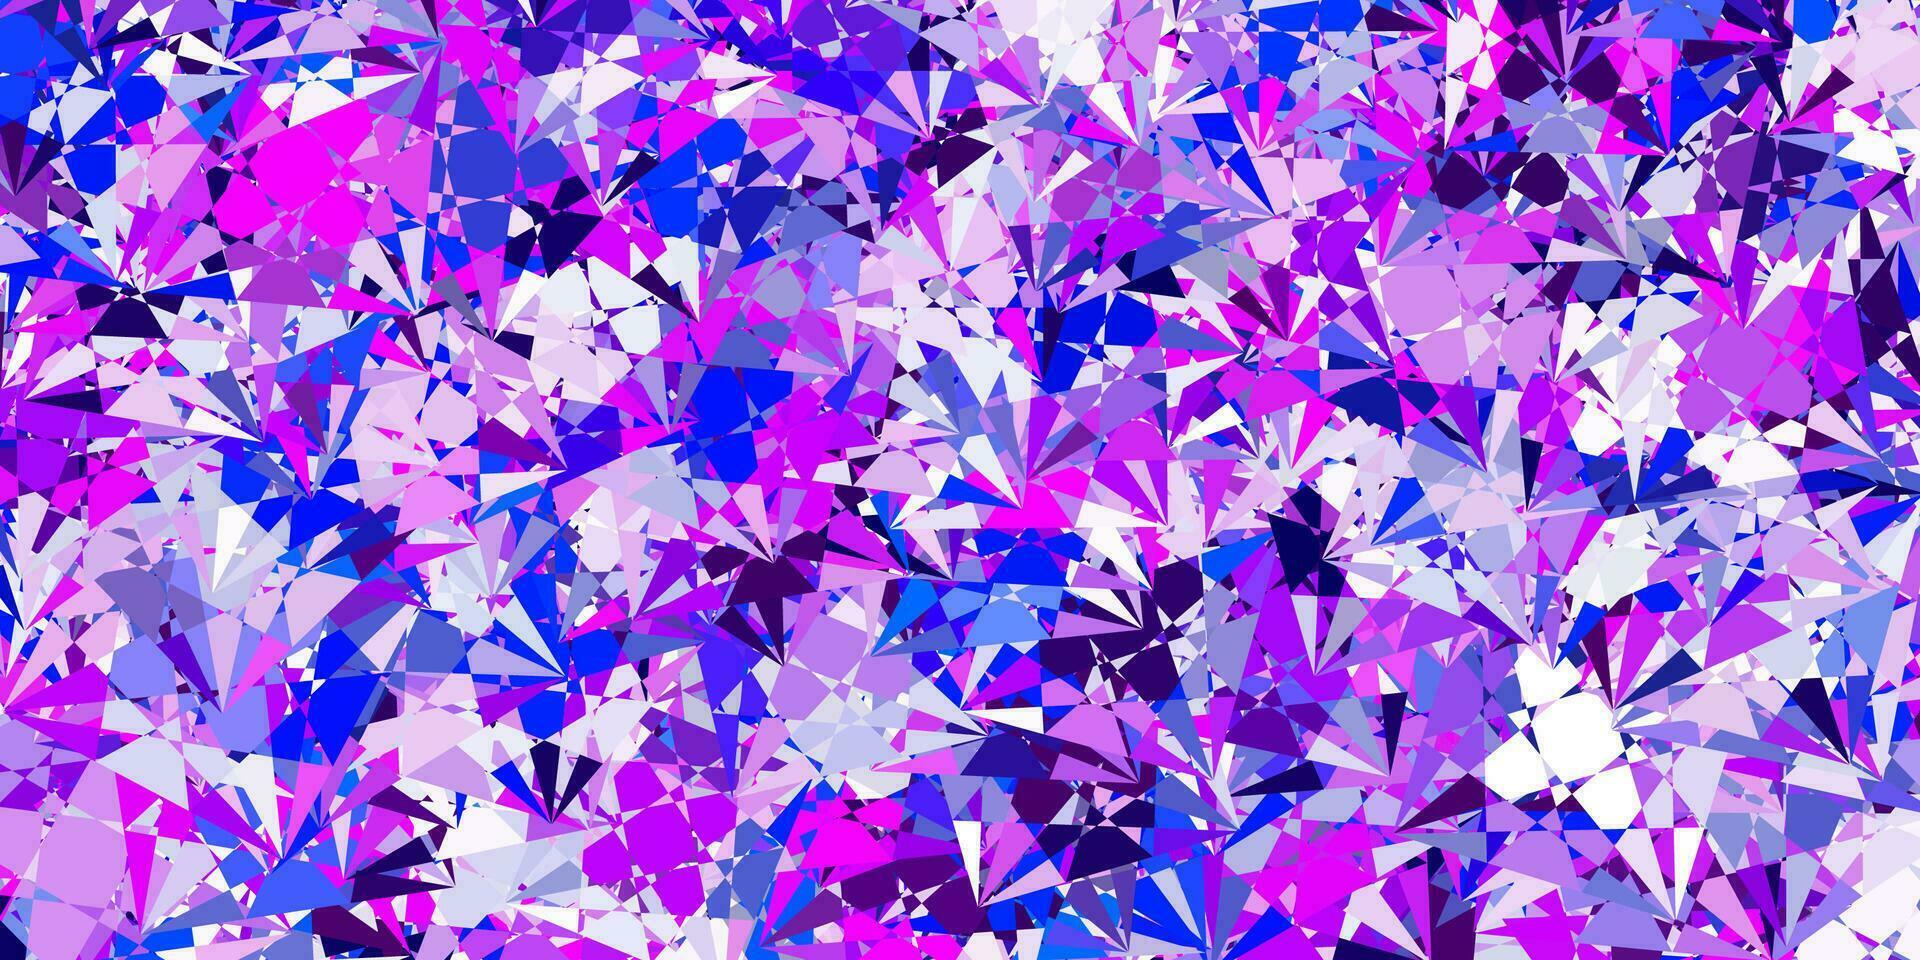 hellrosa, blauer Vektorhintergrund mit polygonalen Formen. vektor